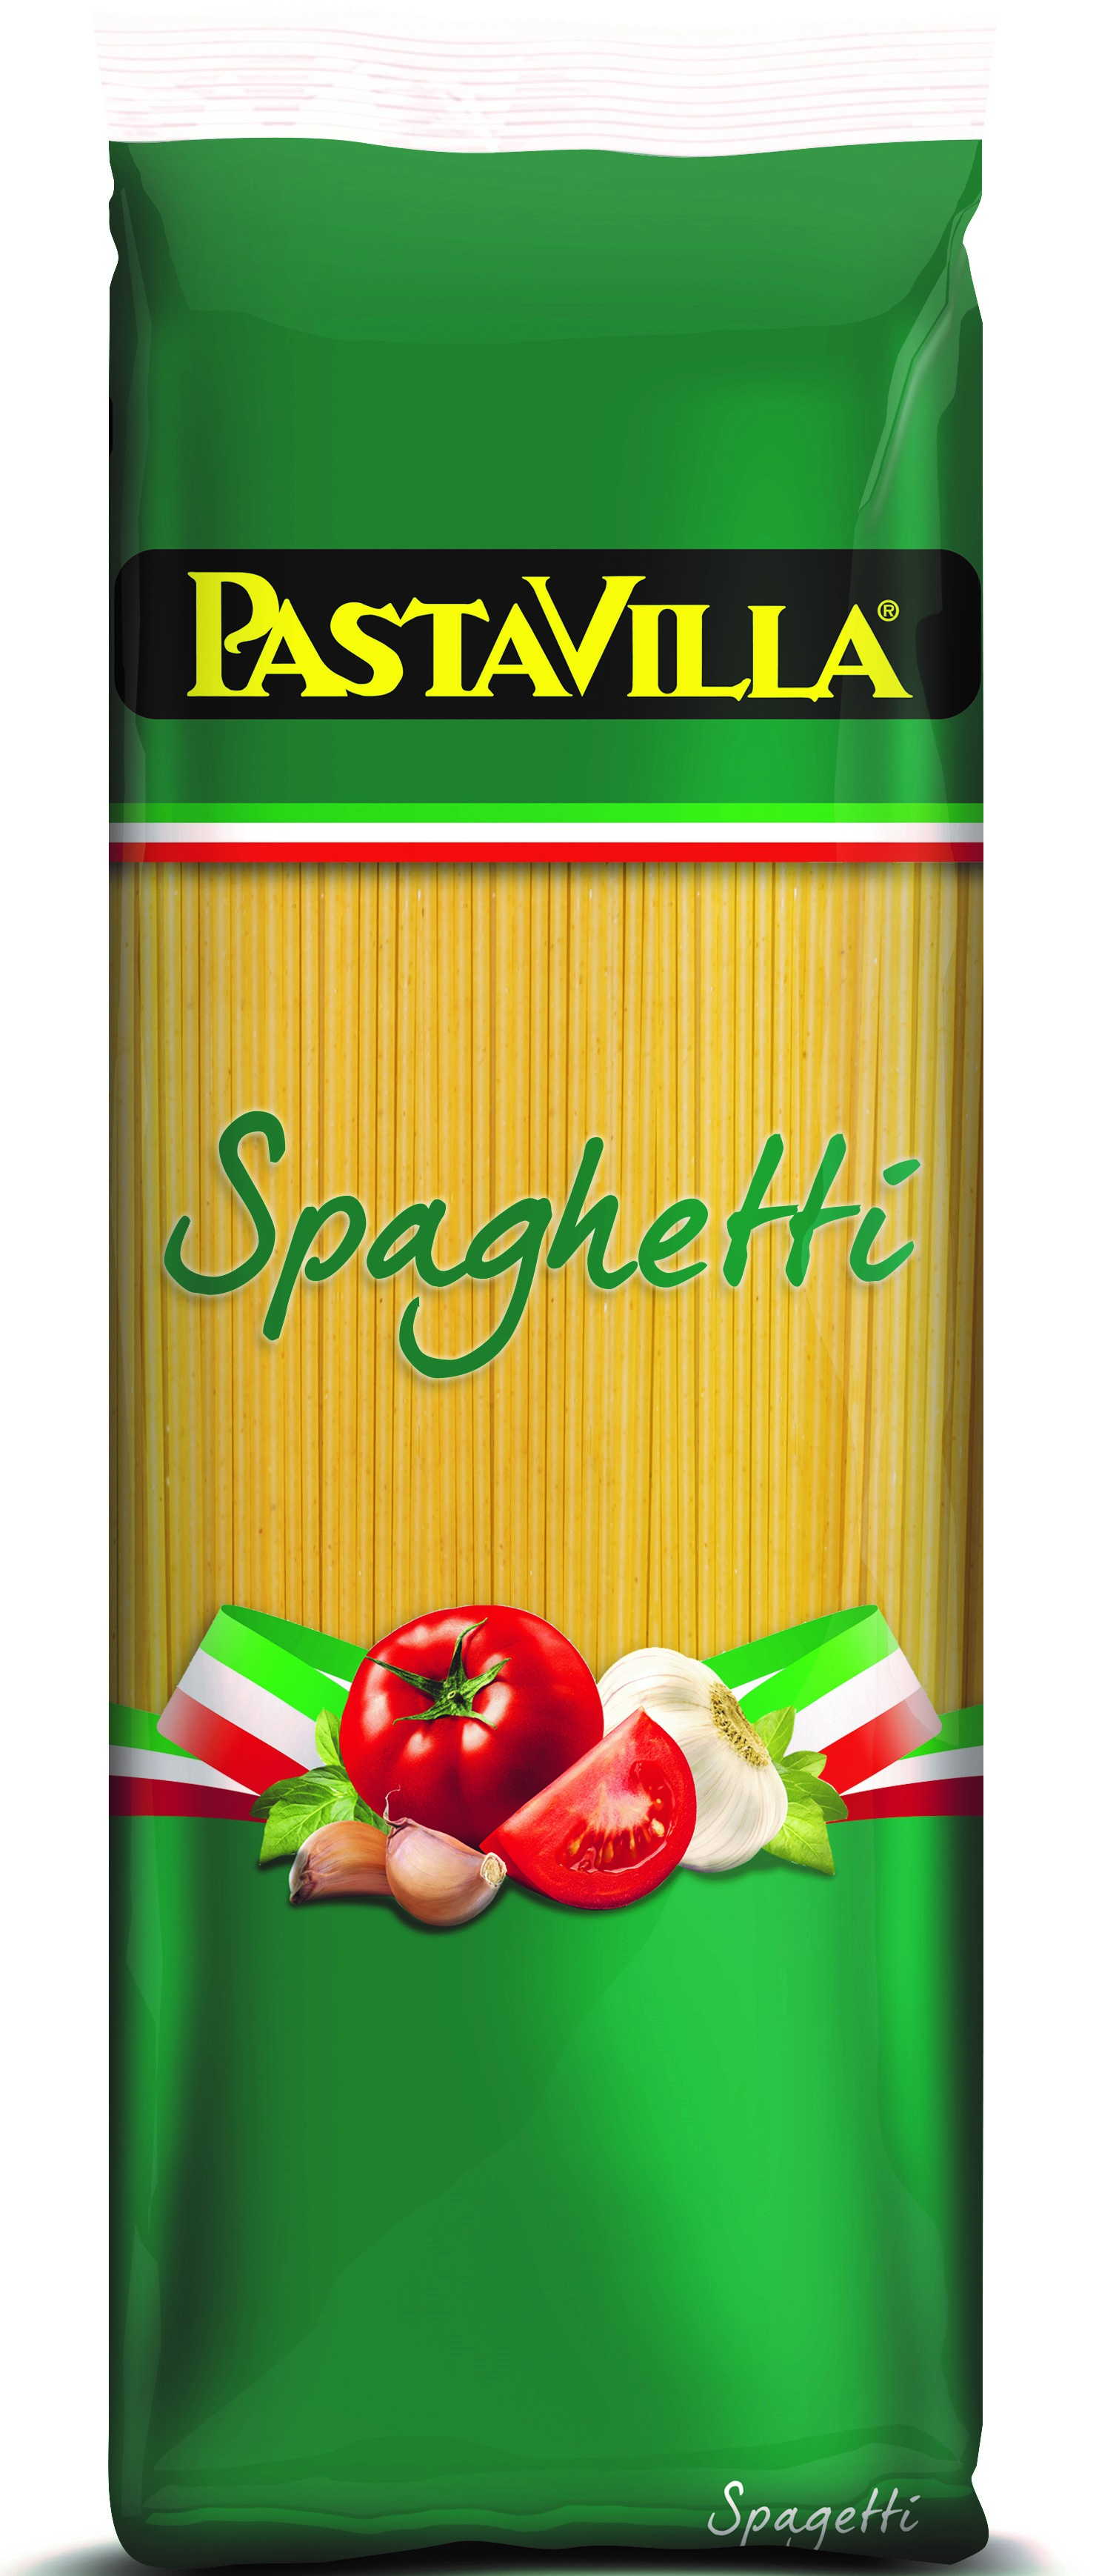 Pastavilla Spaghetti 1_7mm